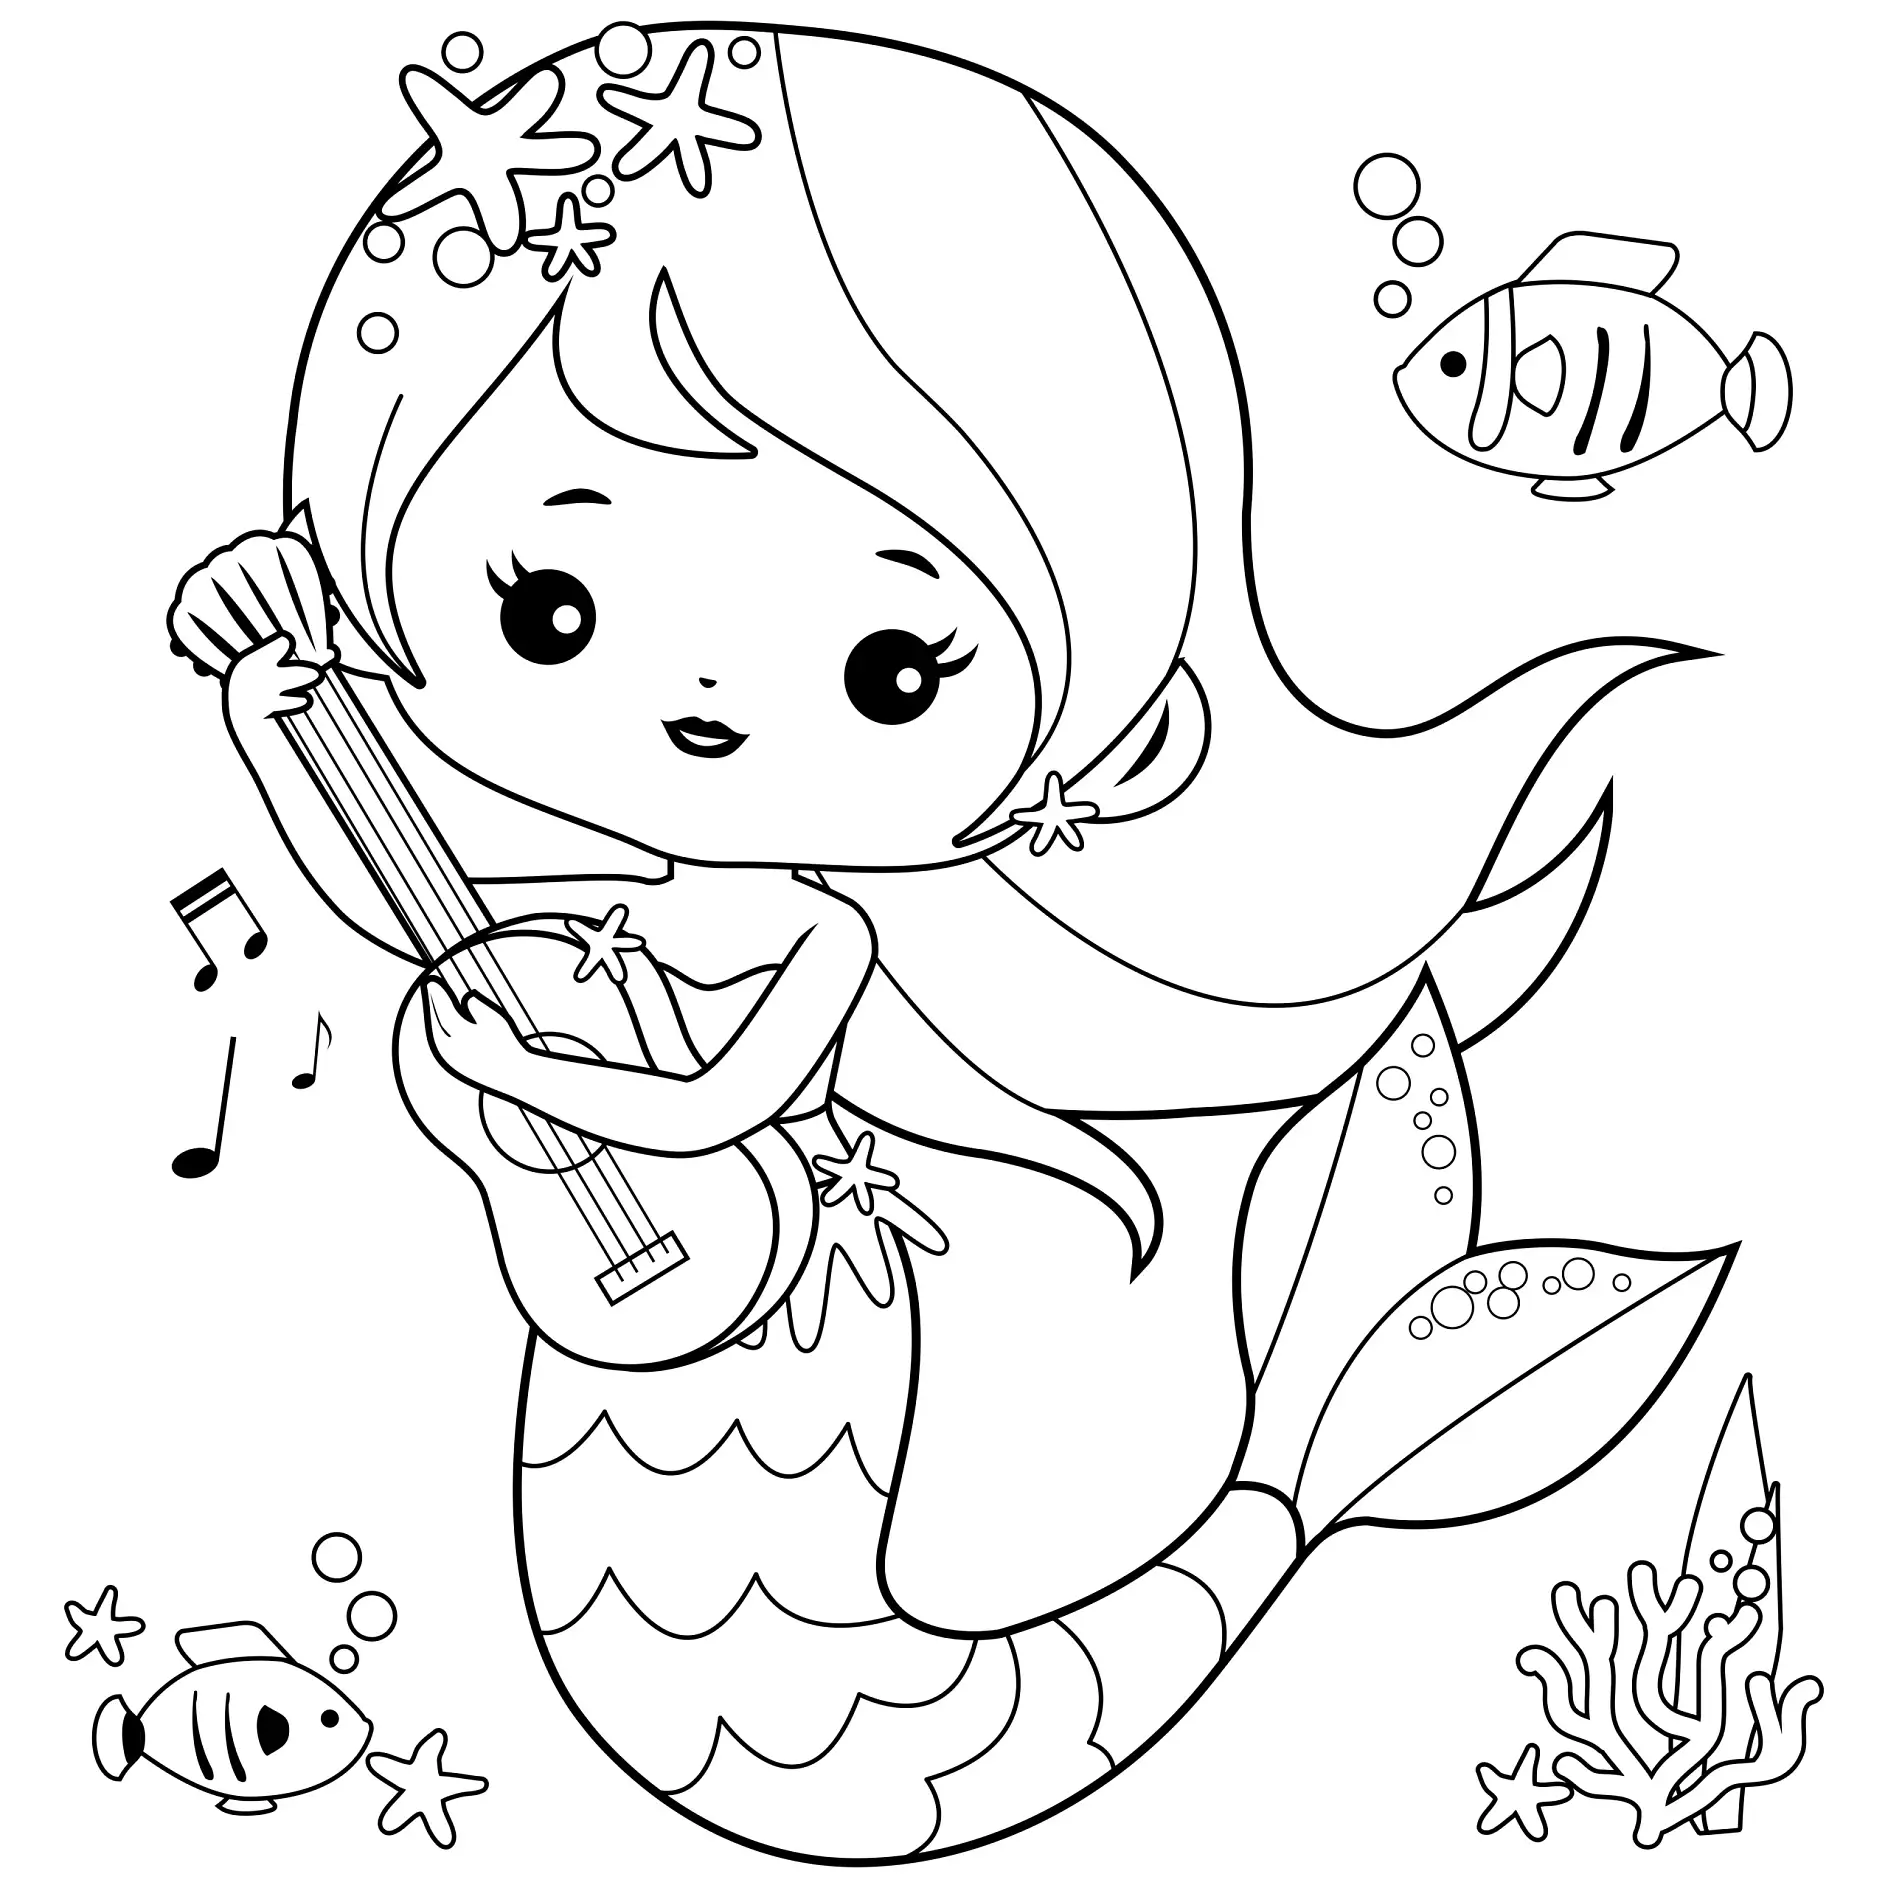 Ausmalbild Meerjungfrau spielt Gitarre umgeben von Fischen und Noten